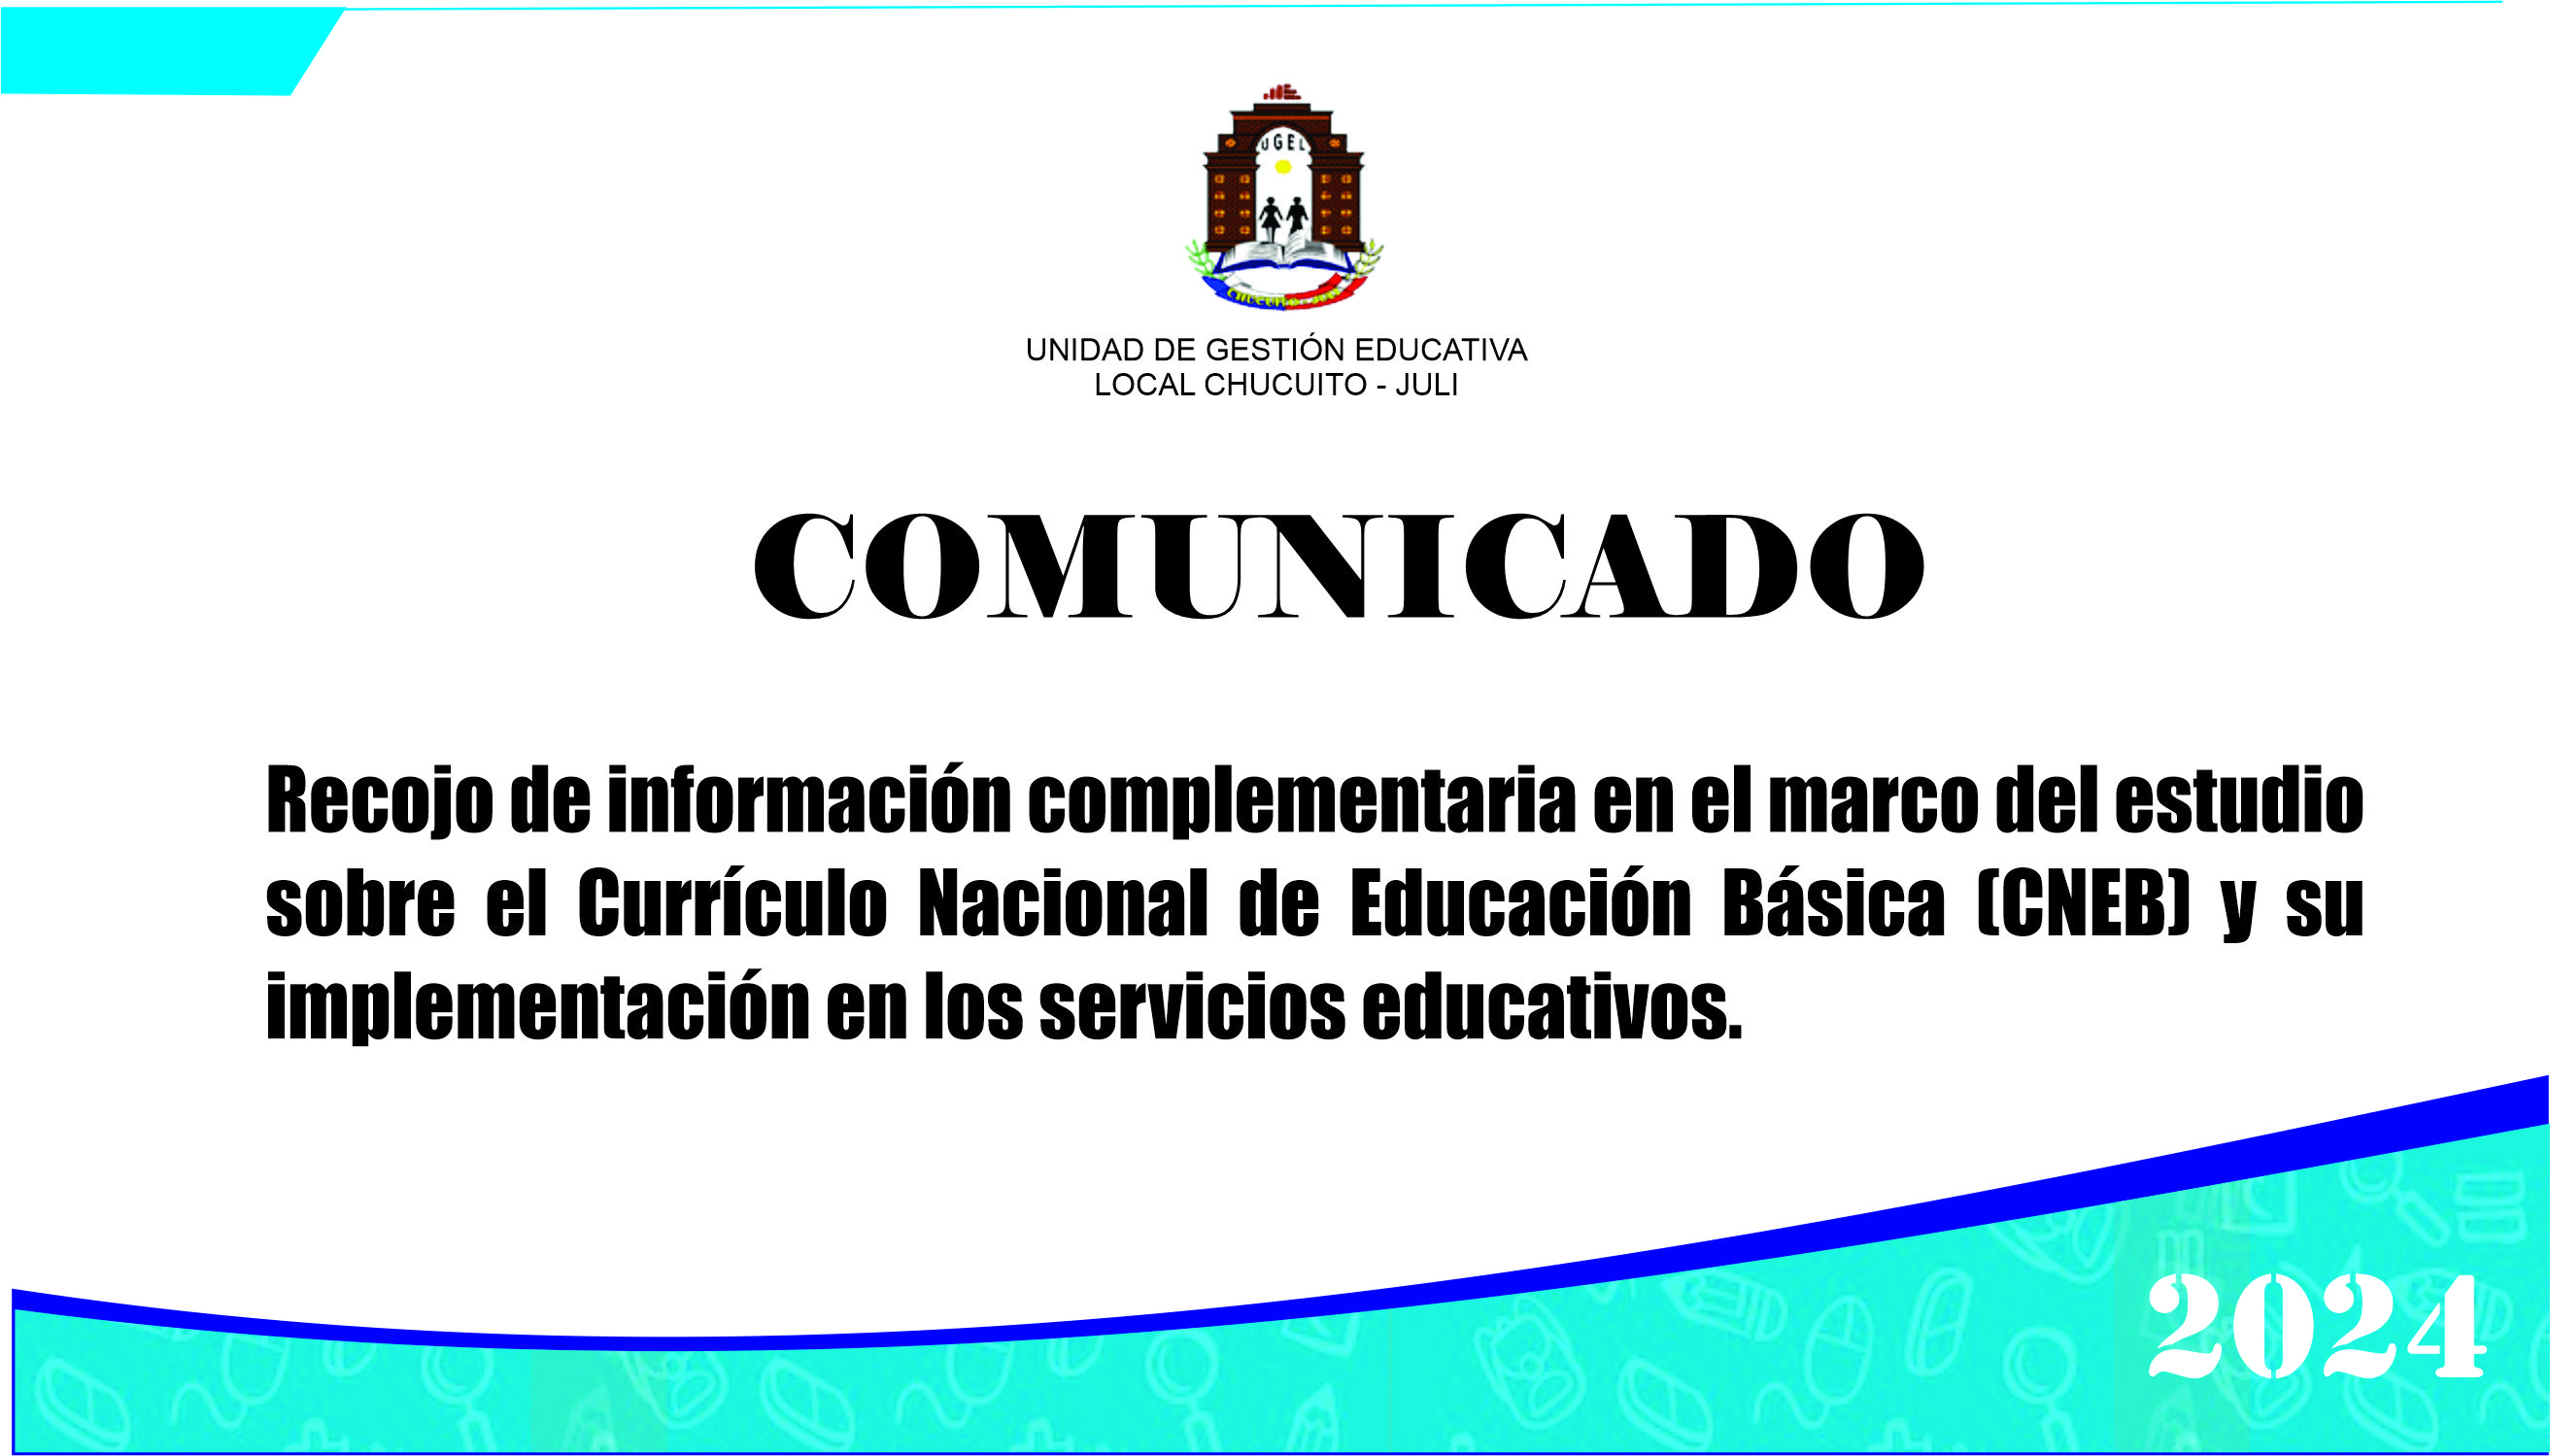 Recojo de información complementaria en el marco del estudio sobre el Currículo Nacional de Educación Básica (CNEB) y su implementación en los servicios educativos.